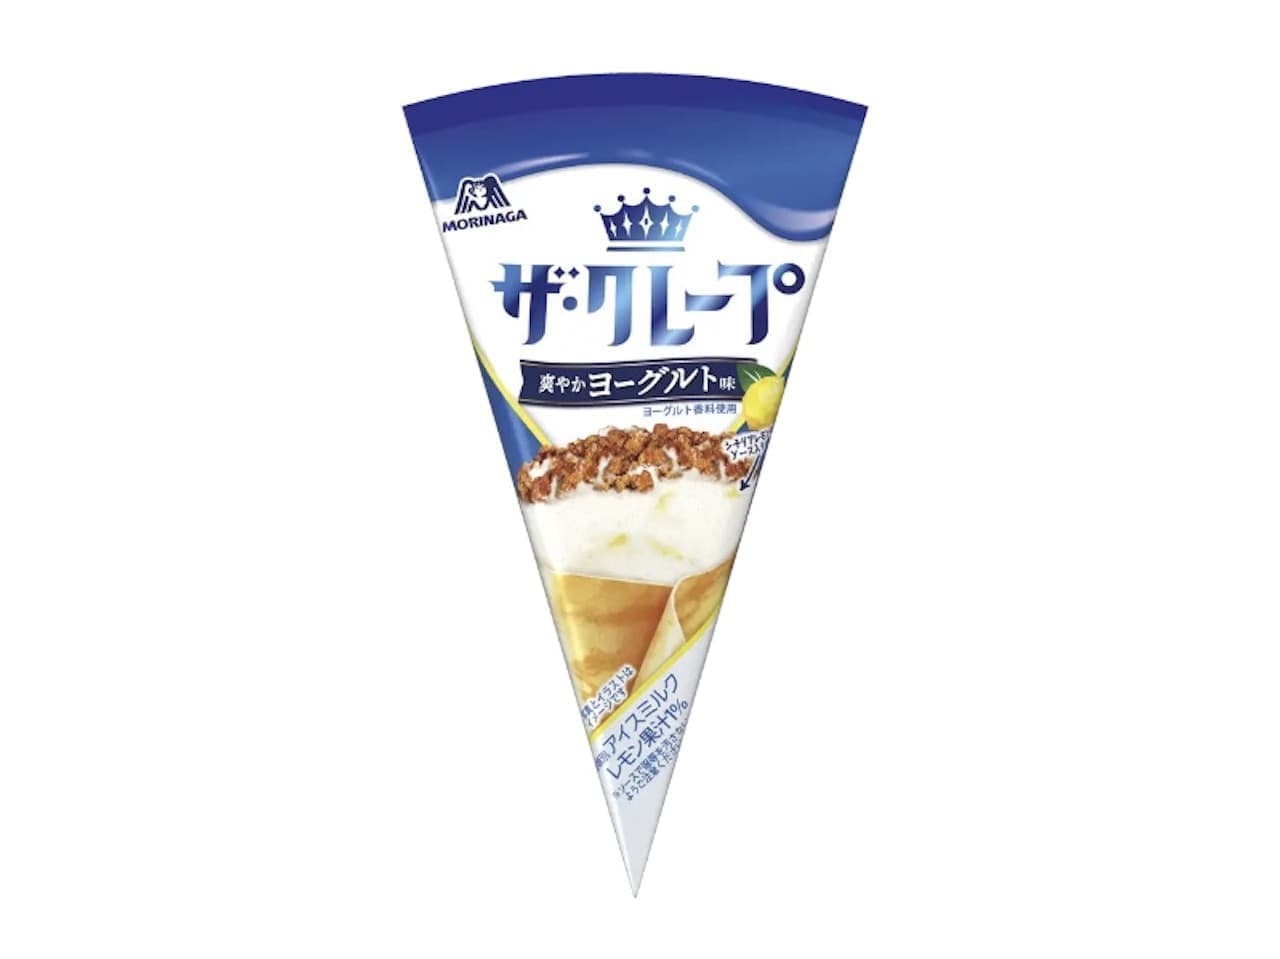 Morinaga Seika "The Crepe [Refreshing Yogurt Flavor]".